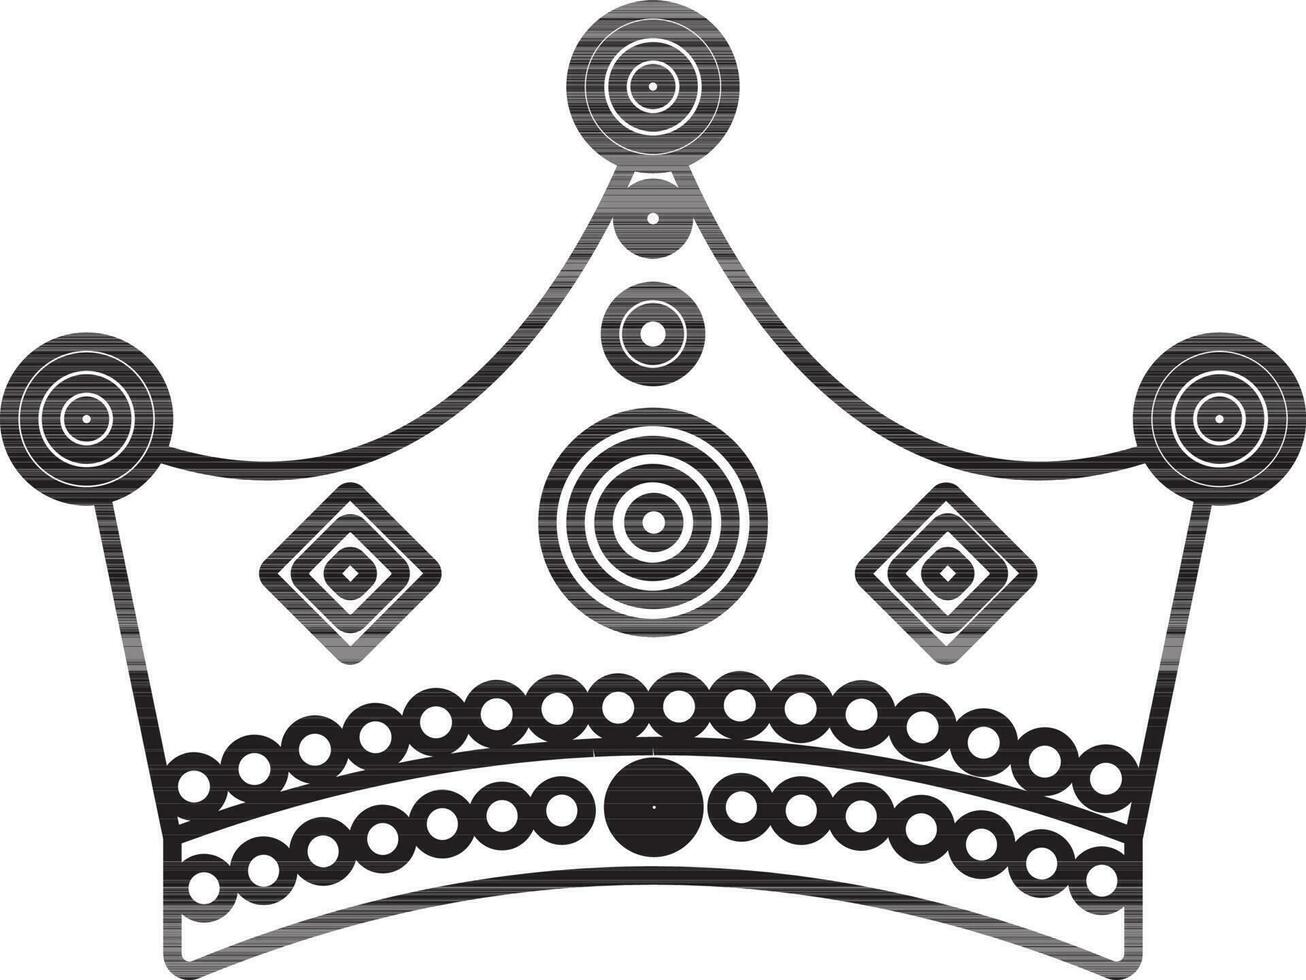 plano estilo corona de rey. vector